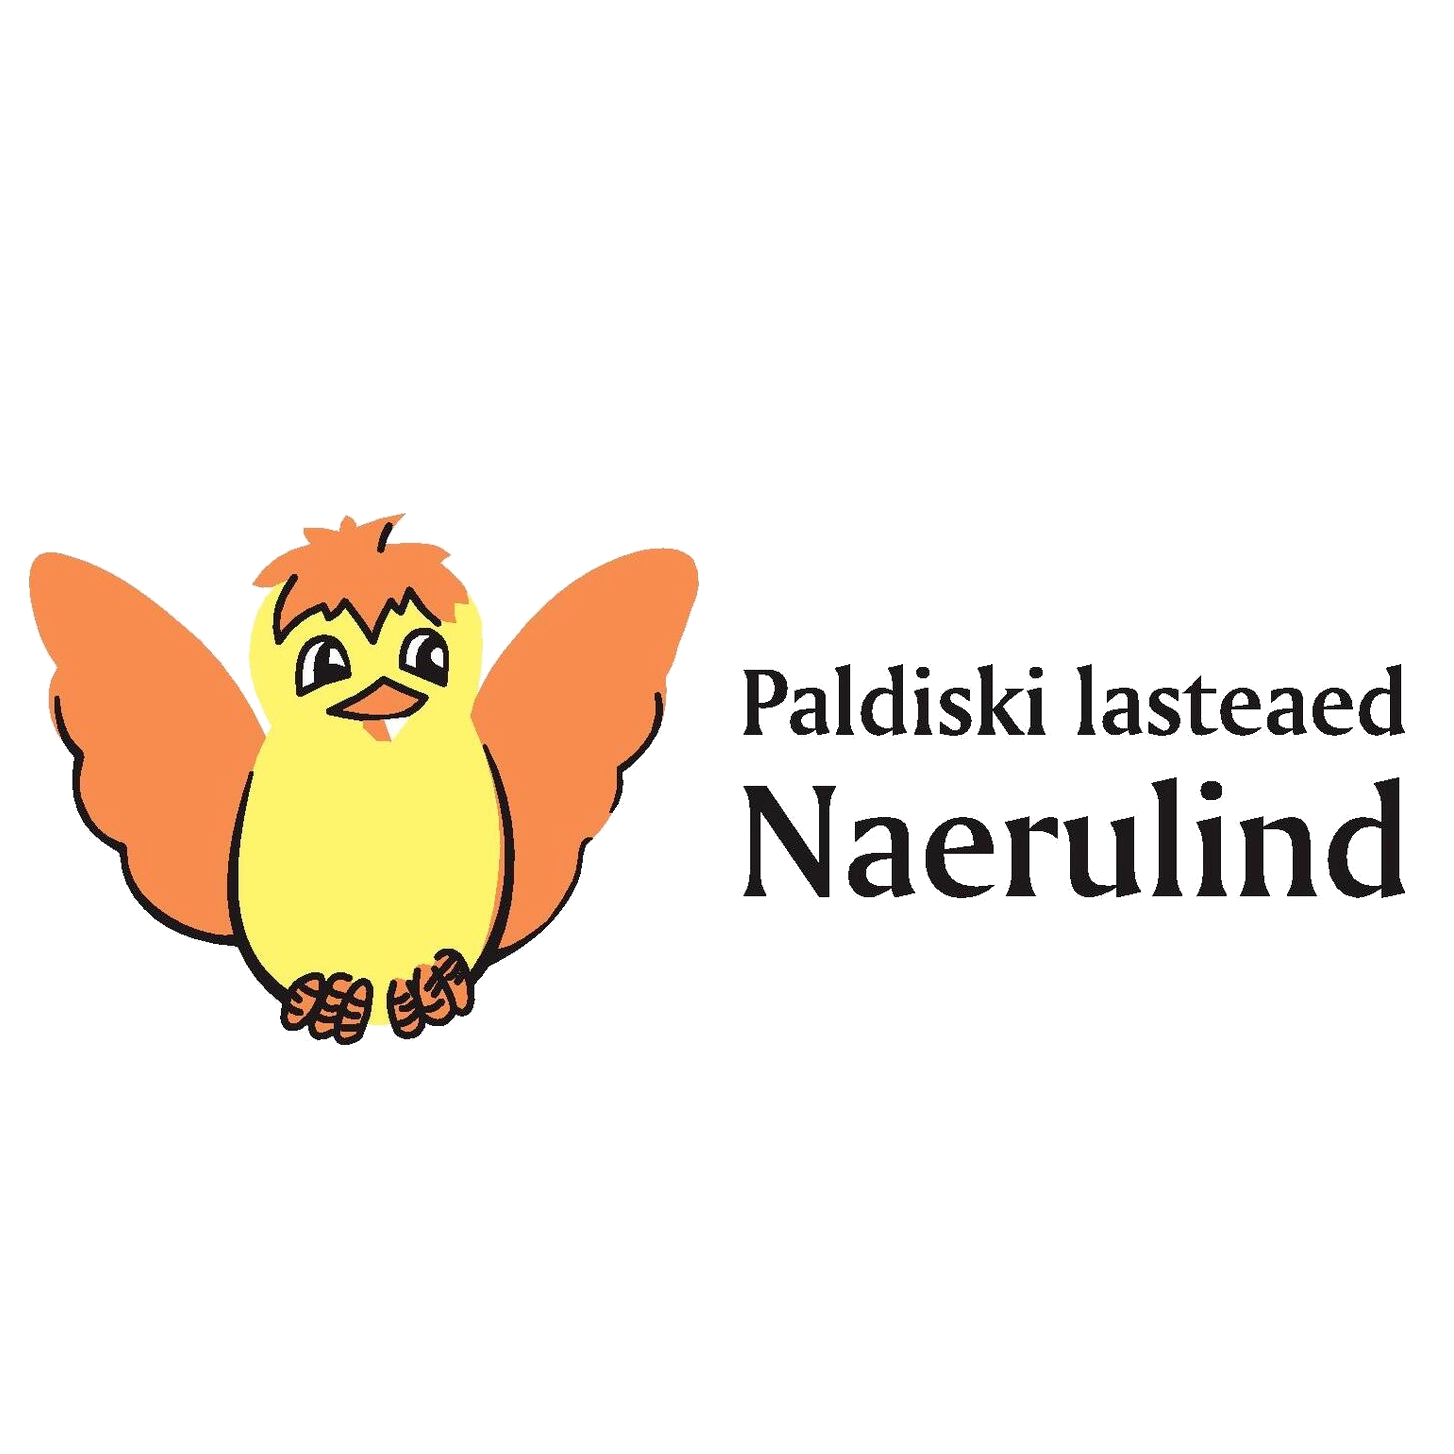 PALDISKI LASTEAED NAERULIND logo